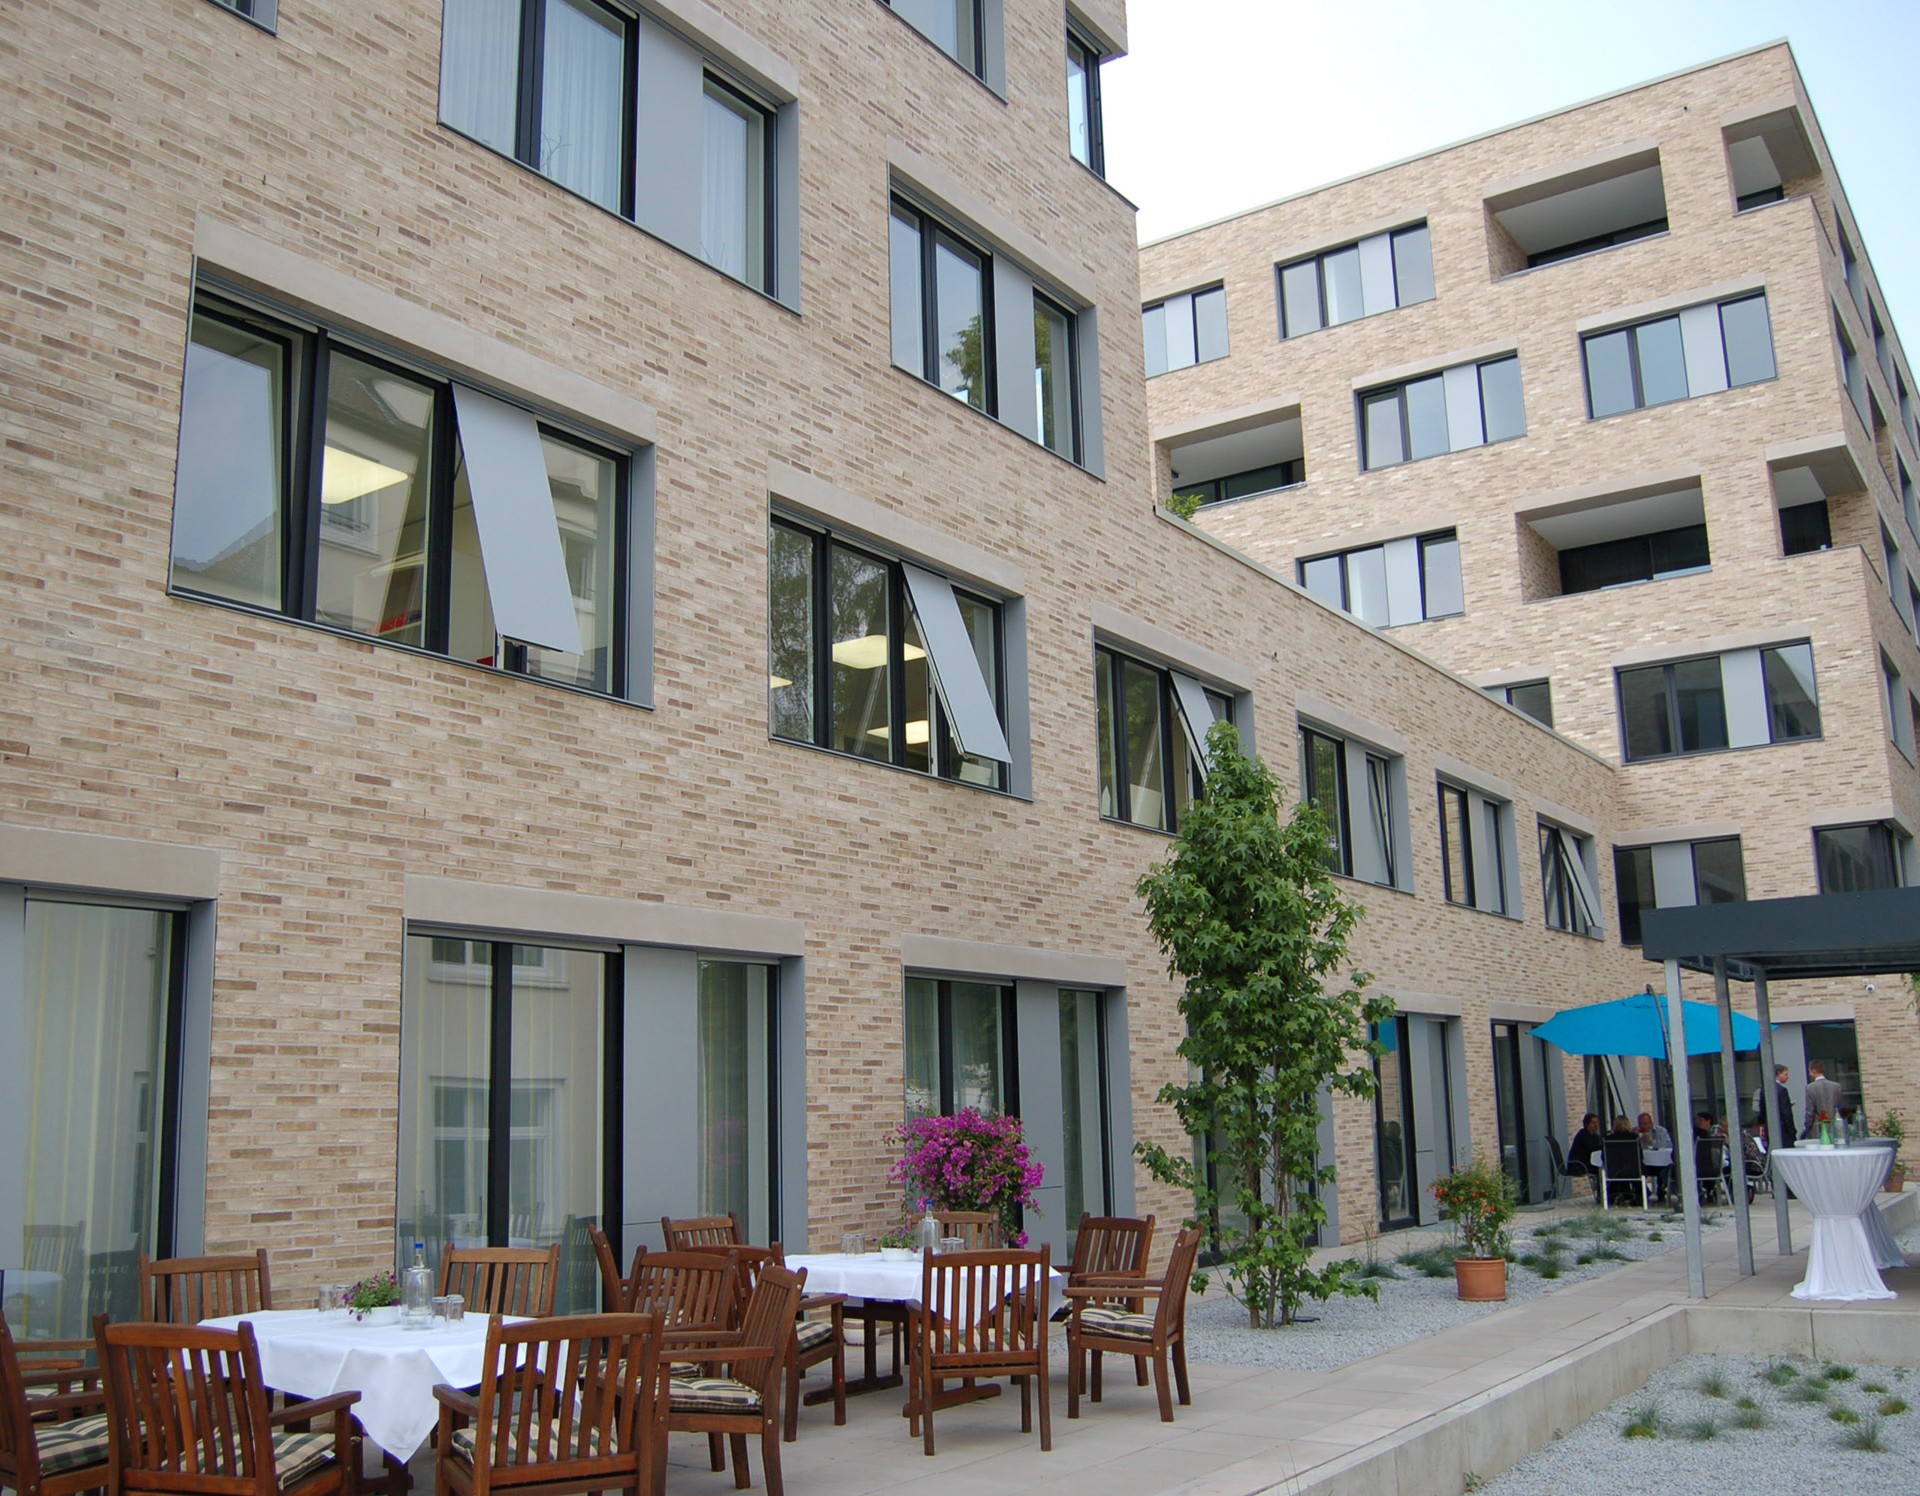 Mehrstöckiges modernes, hell-beiges Gebäude, auf der Terrasse davor stehen einige braune Stühle und Tische mit einem blauen Sonnenschirm